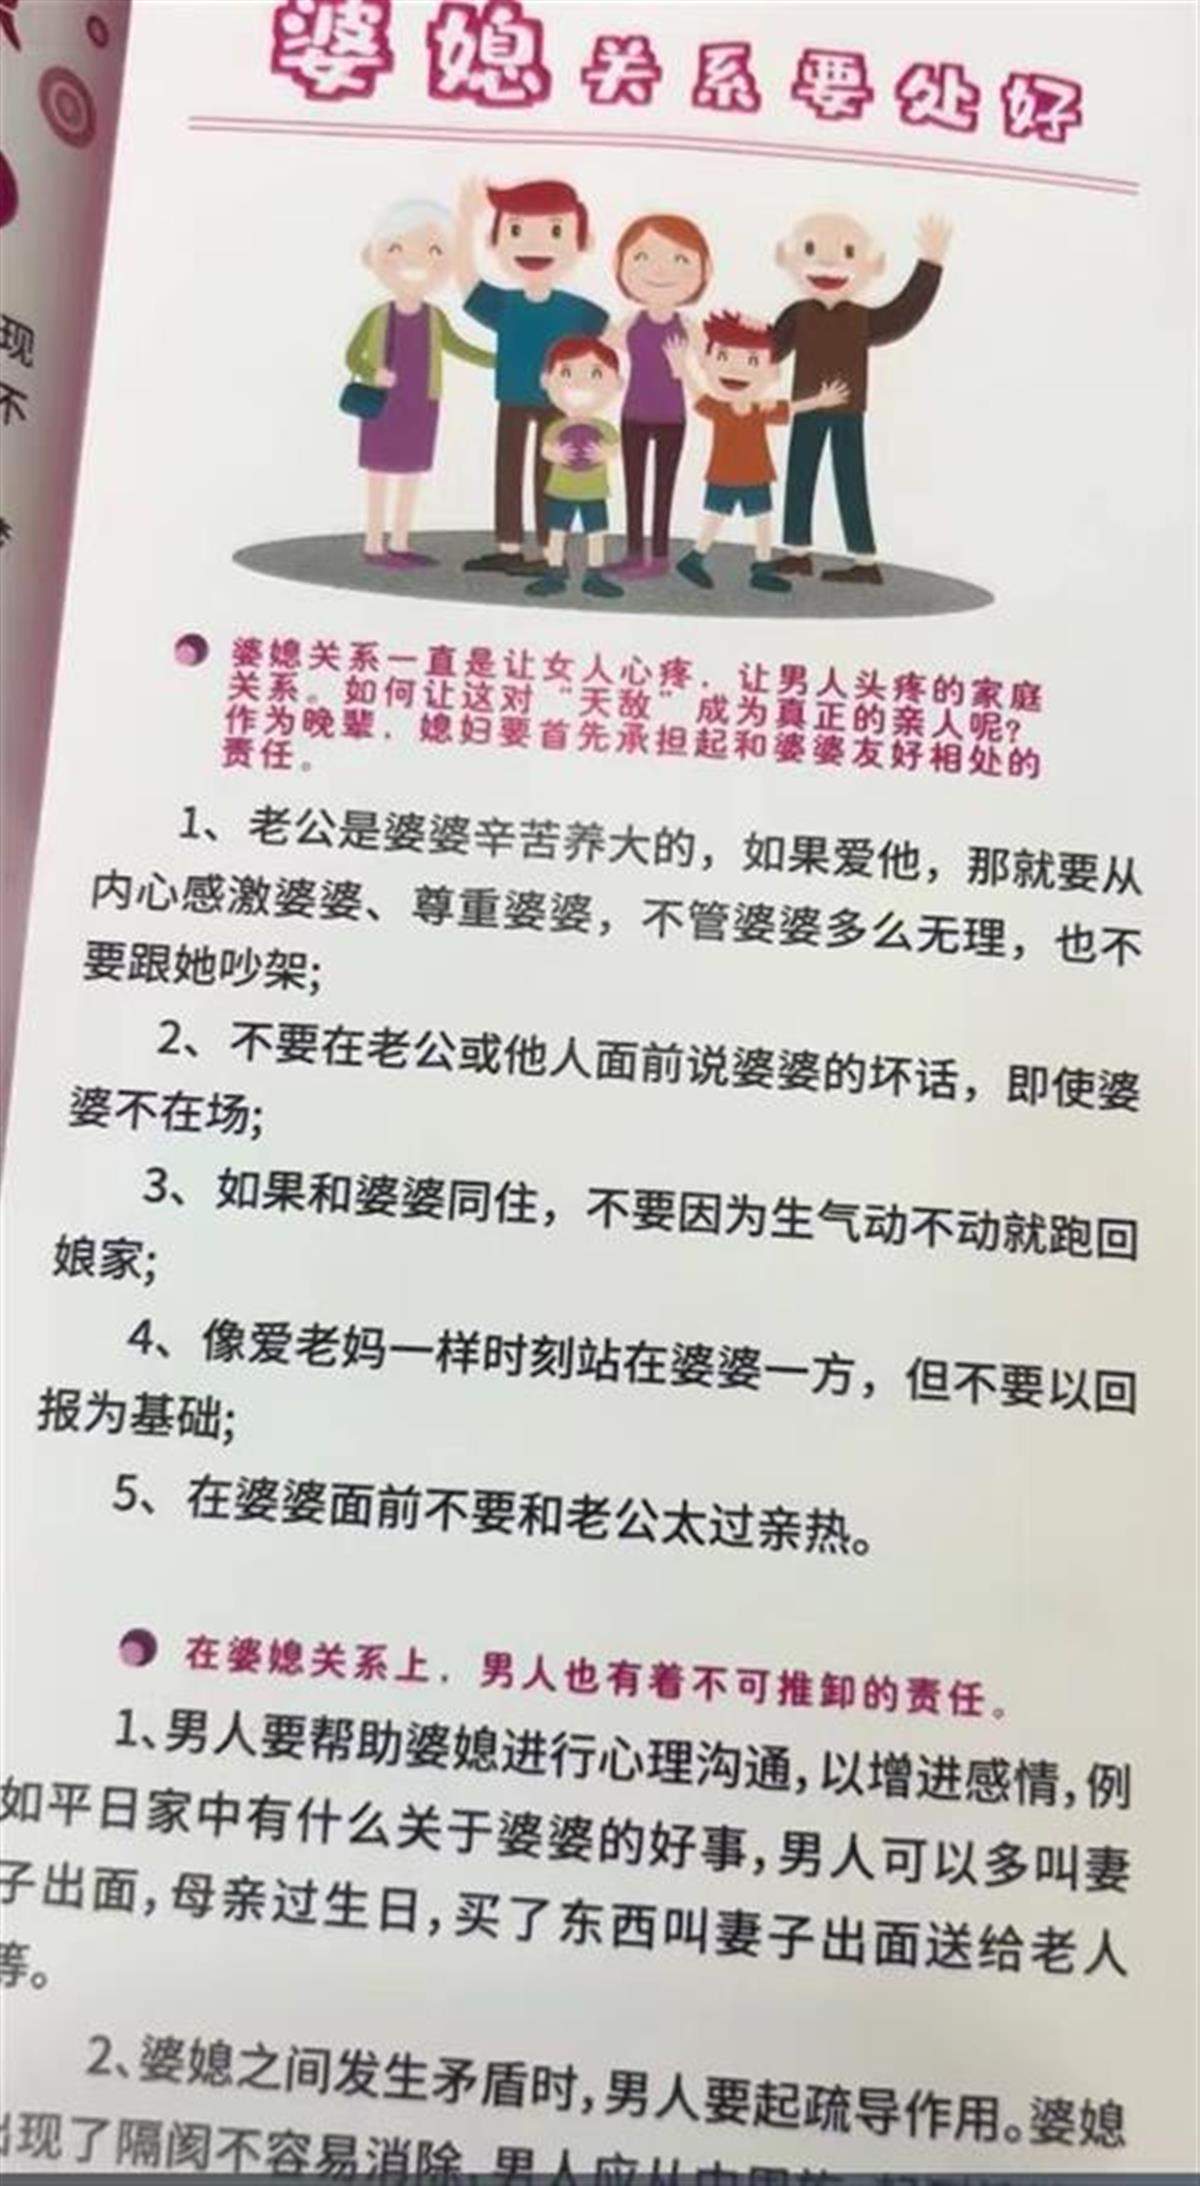 深圳一社区宣传单引发争议，社区：表述确实不严谨，已下架